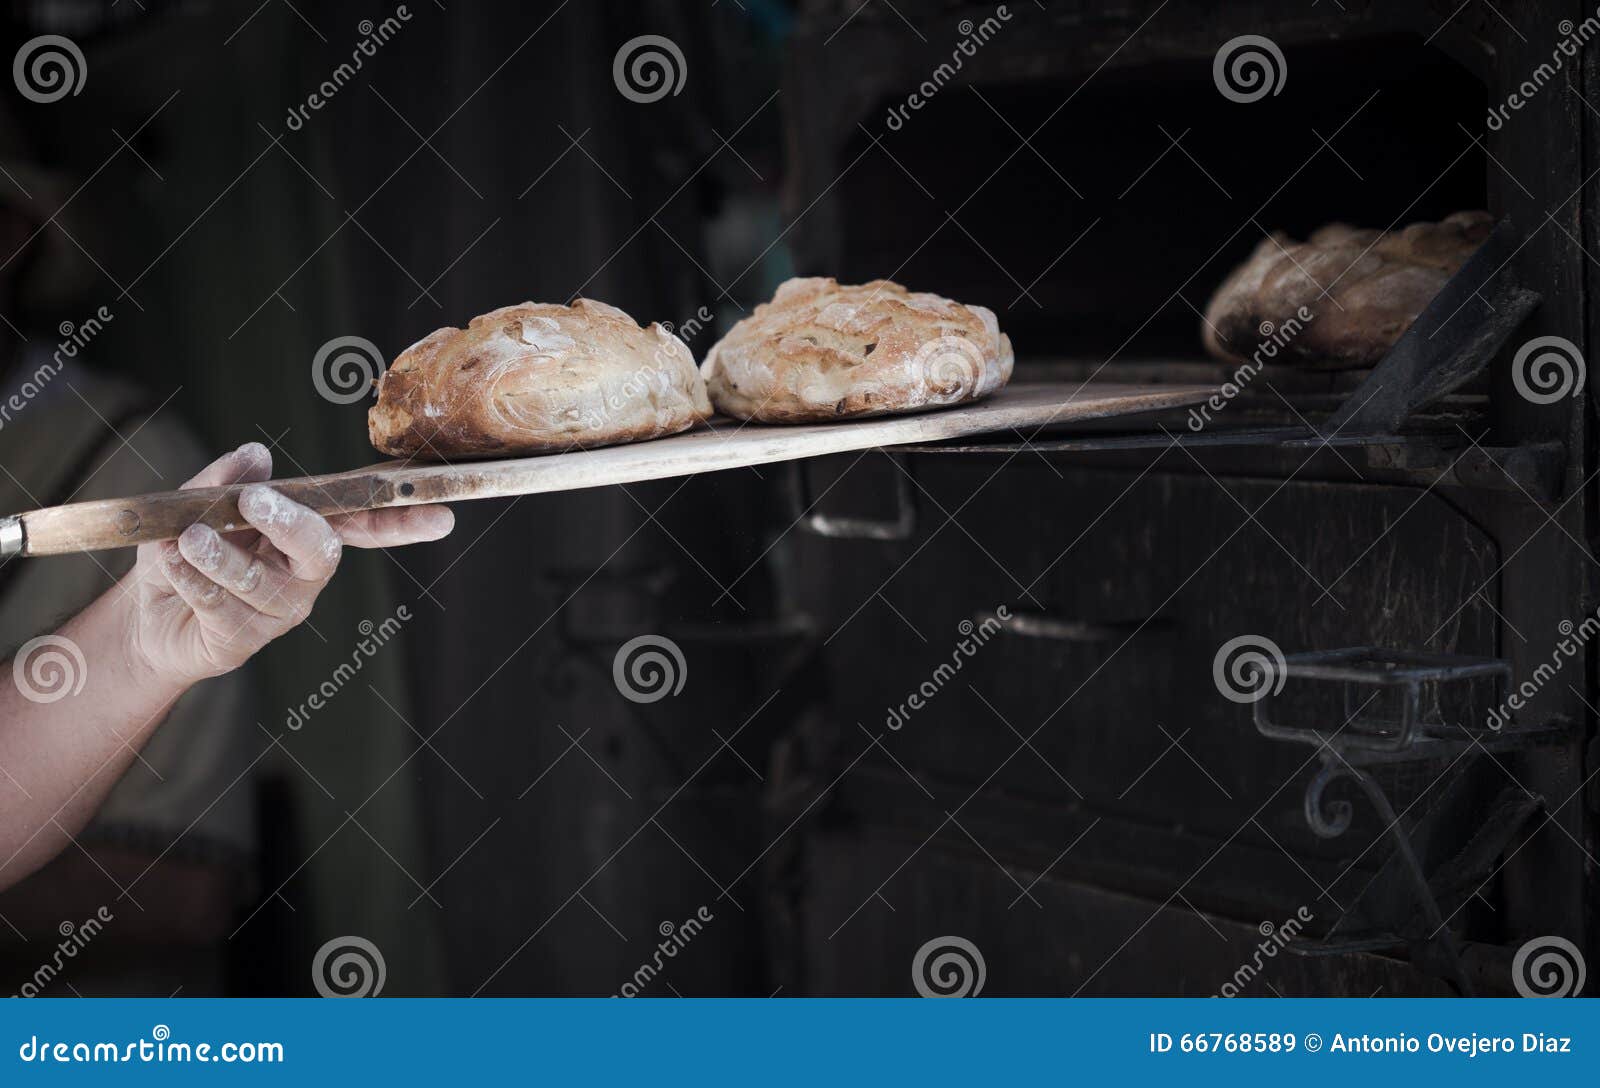 Видео печь хлеб. Пекарь печет хлеб. Печь для хлеба Бейкер. Лопата для хлеба. Ремесленная пекарня пекарь печь.